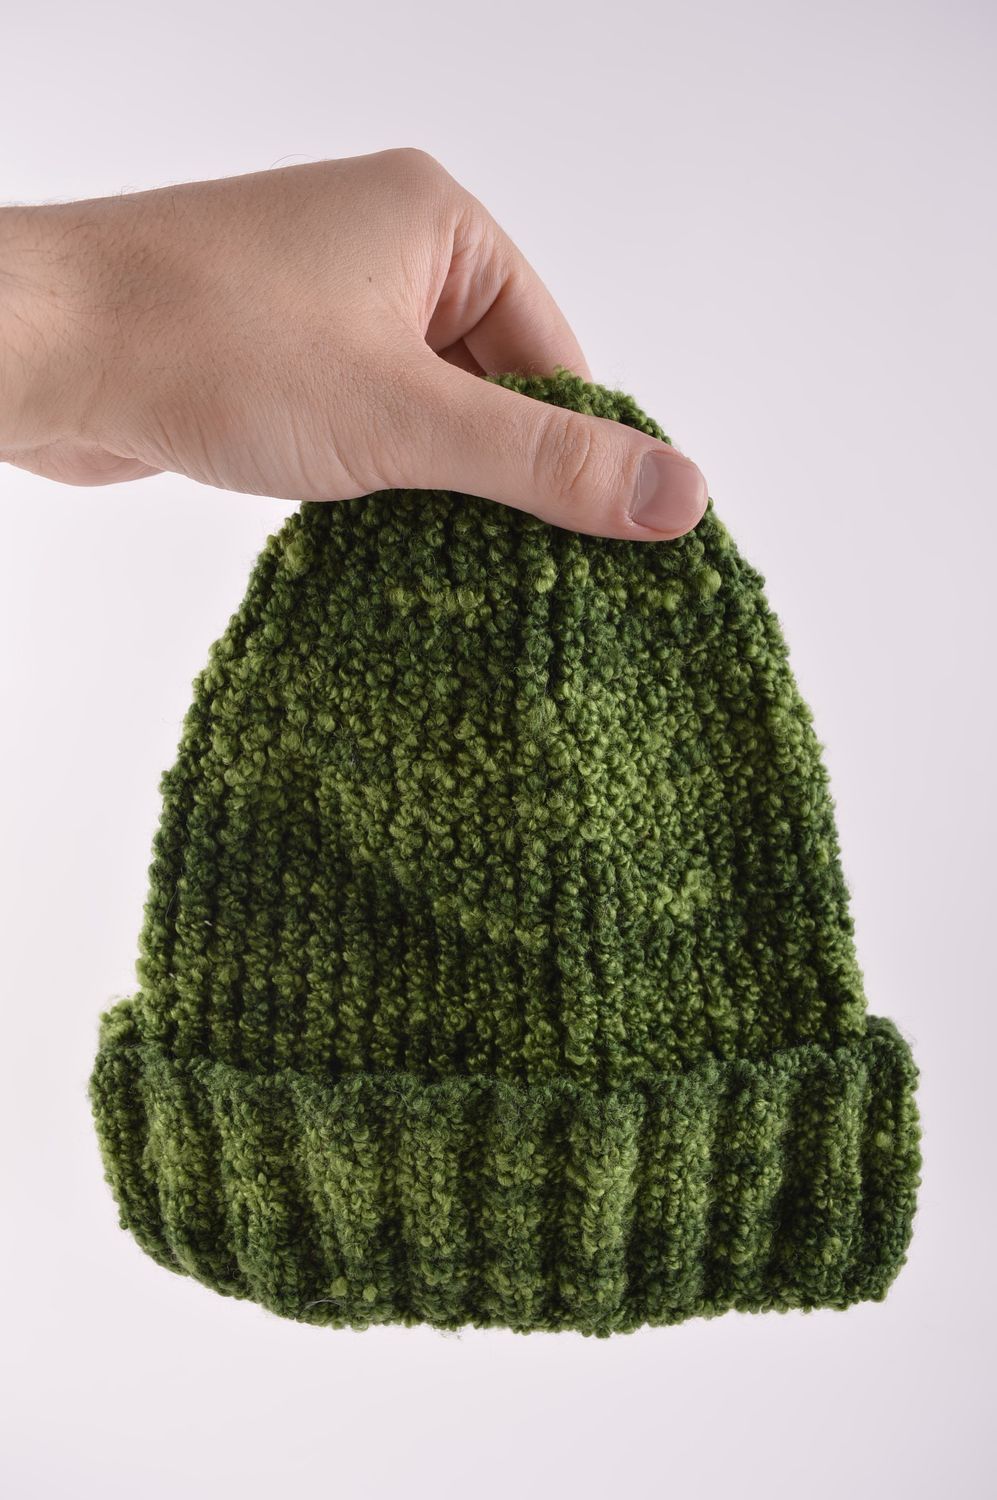 Головной убор хэнд мэйд зимняя женская шапка зеленая теплая зимняя шапка фото 5